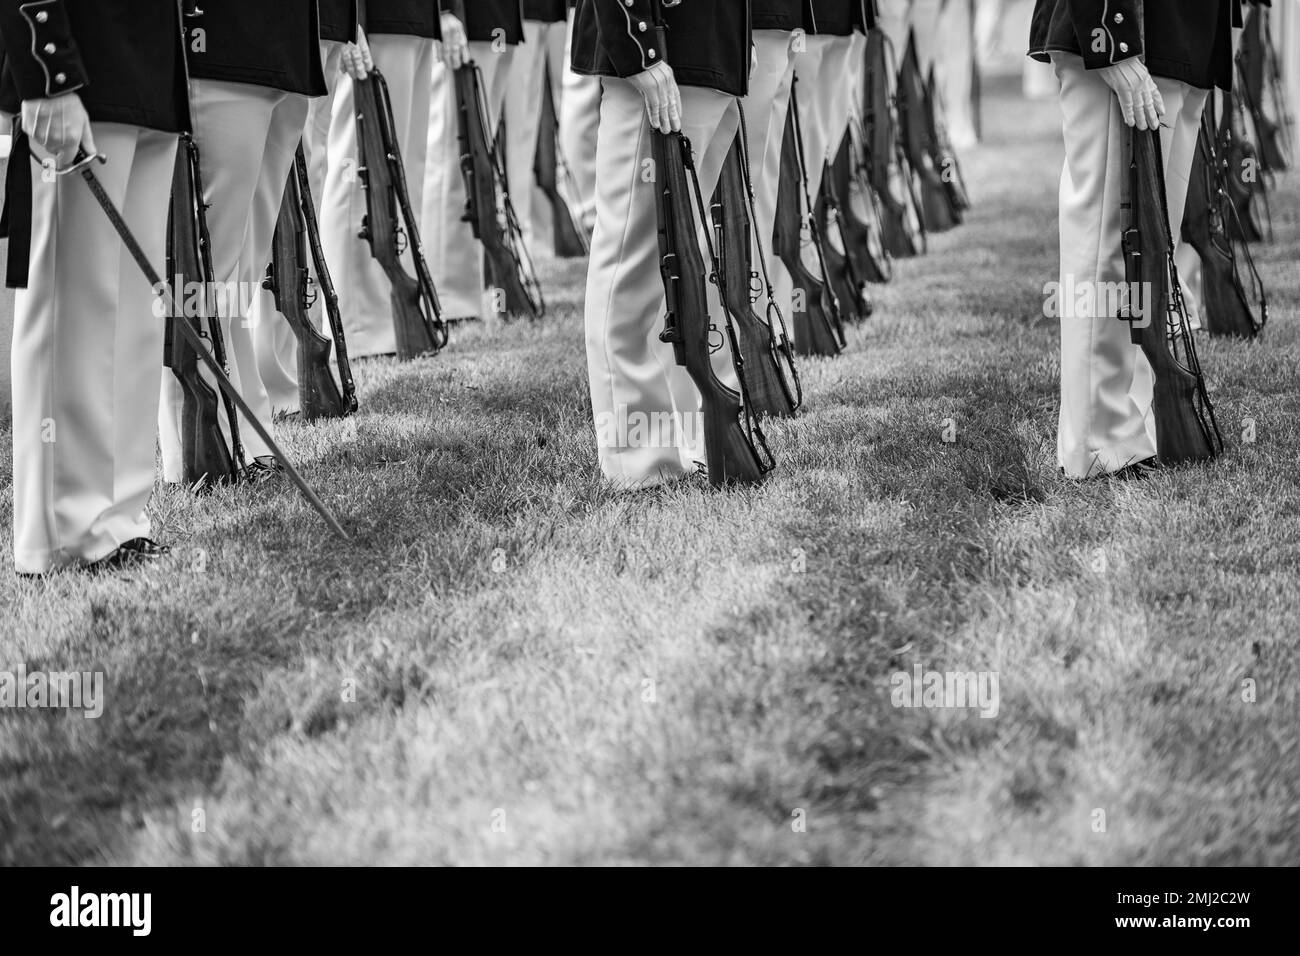 Infantes de marina de la Banda de Marines “El Propio Presidente”, infantes de marina de los Cuarteles de Marines, Washington, D.C. (8th y I), y los 3D Estados Unidos El Regimiento de Infantería (la Vieja Guardia) Caisson Platoon realiza honores funerarios militares con escolta funeraria para el recipiente de la Medalla de Honor U.S. El Sargento Mayor del Cuerpo de Infantería de Marina John Canley en la Sección 60 del Cementerio Nacional de Arlington, Arlington, Virginia, 25 de agosto de 2022. Canley fue galardonado con la Medalla de Honor en 2018 por sus acciones durante la batalla de la ciudad de Hue, Vietnam en 1968. Como sargento de artillería de la Compañía, Compañía A, 1st Batallón, 1st Infantería de Marina, 1st División de Marines, Canley y el suyo Foto de stock